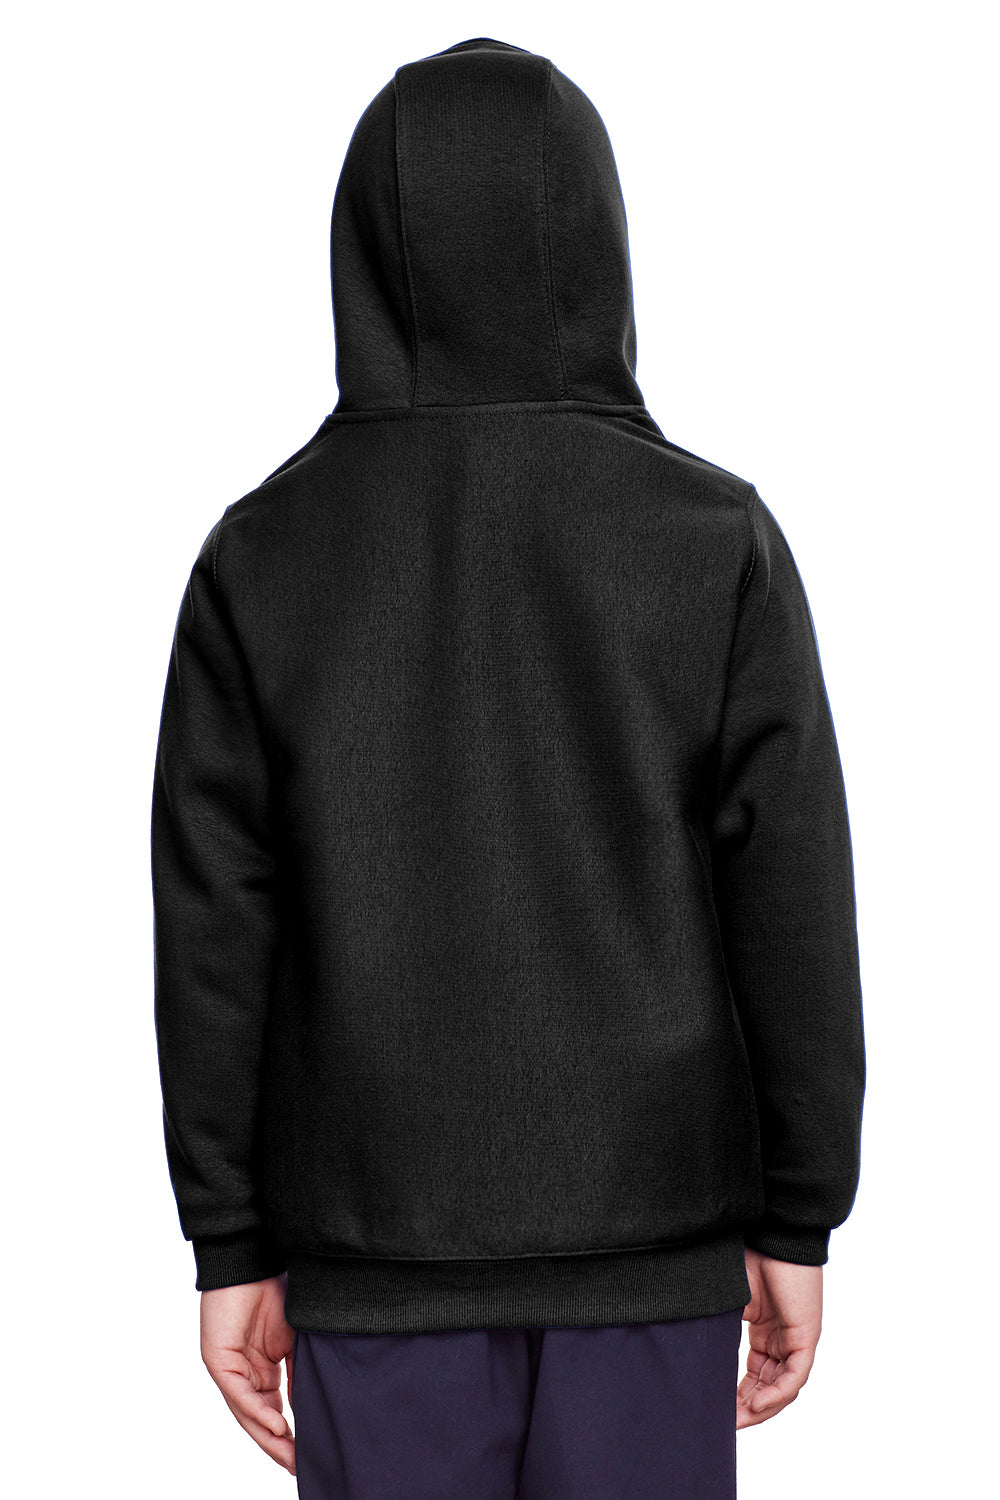 Team 365 TT96Y Youth Zone HydroSport Fleece Water Resistant Hooded Sweatshirt Hoodie Black Back